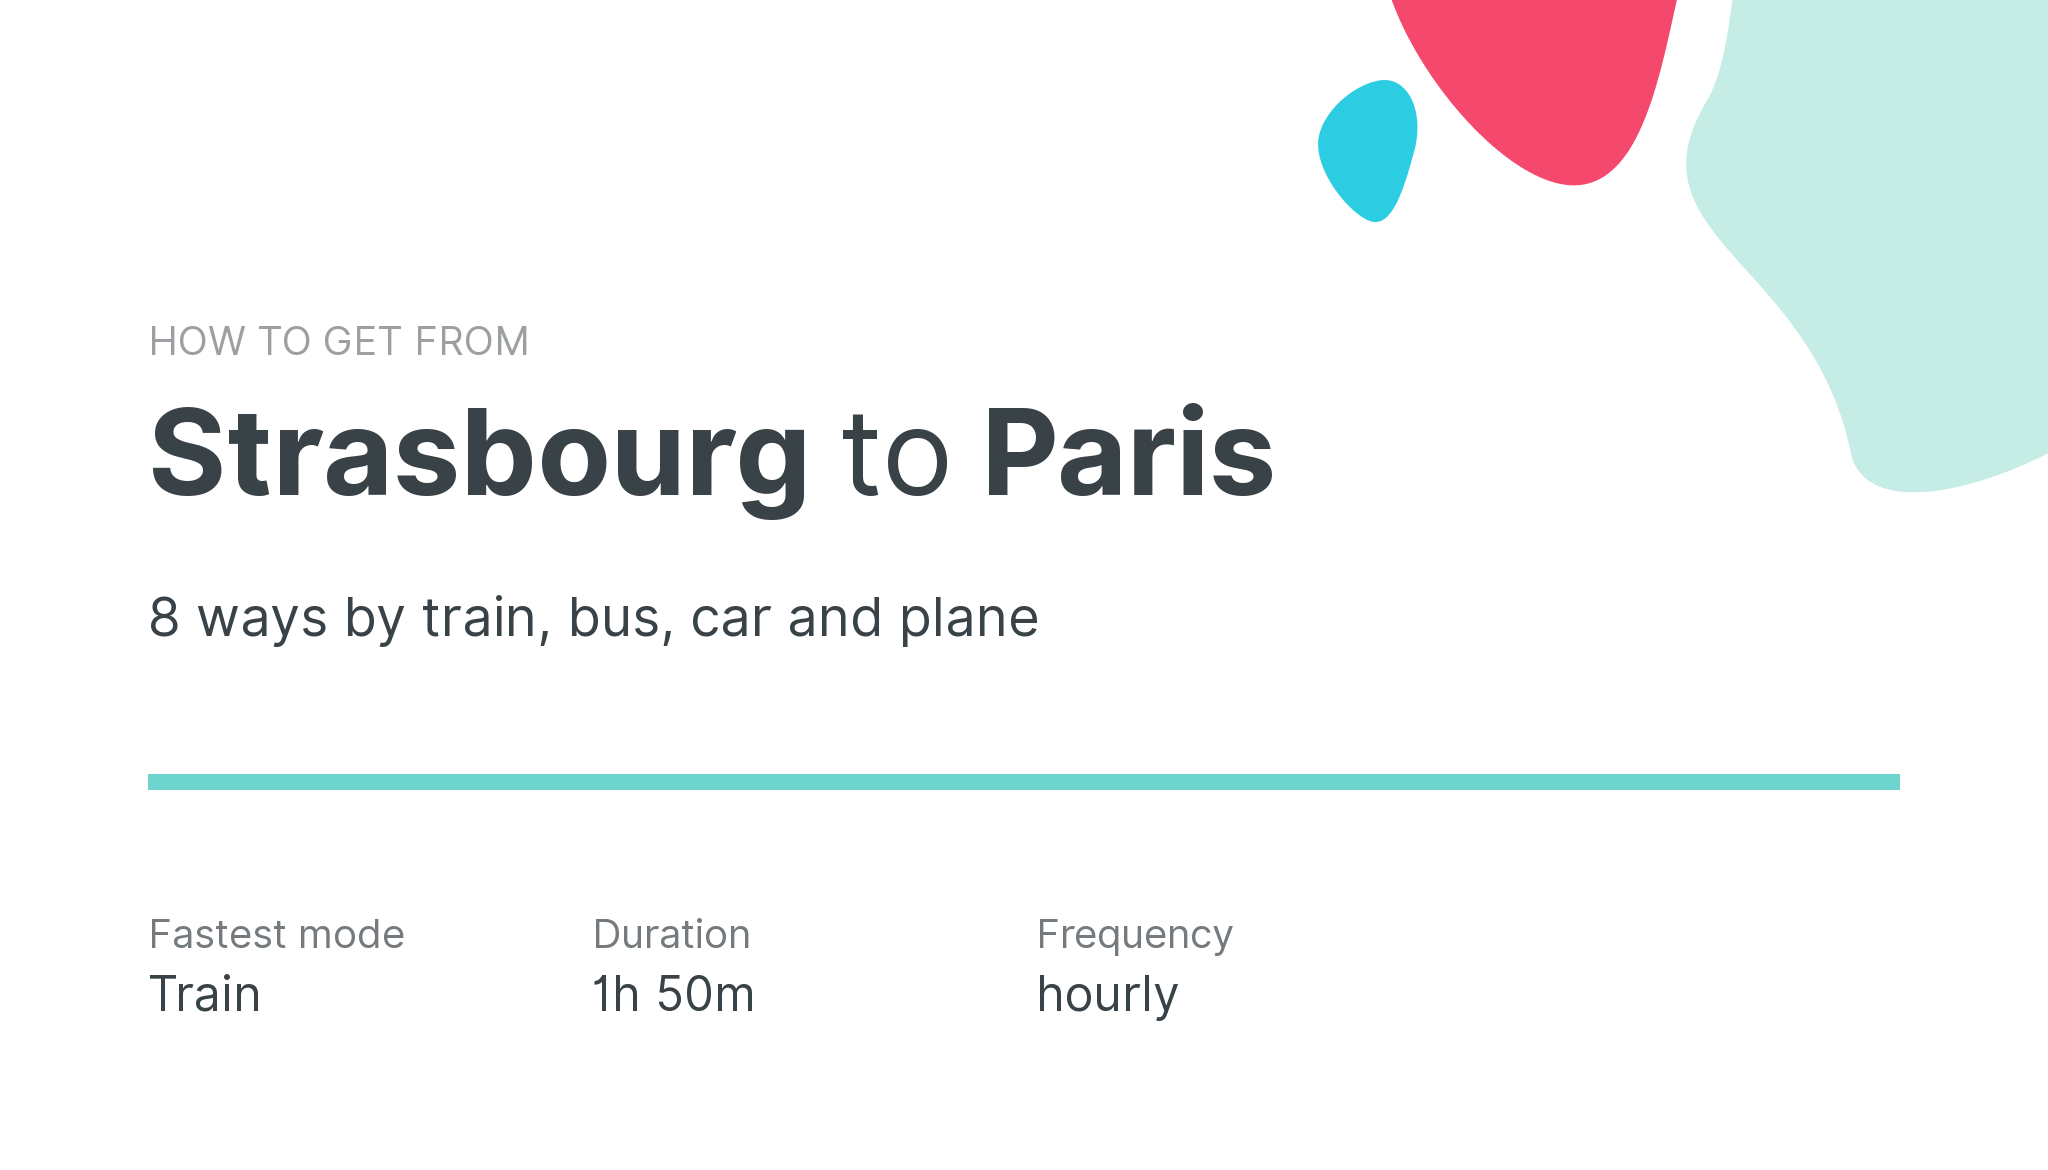 How do I get from Strasbourg to Paris